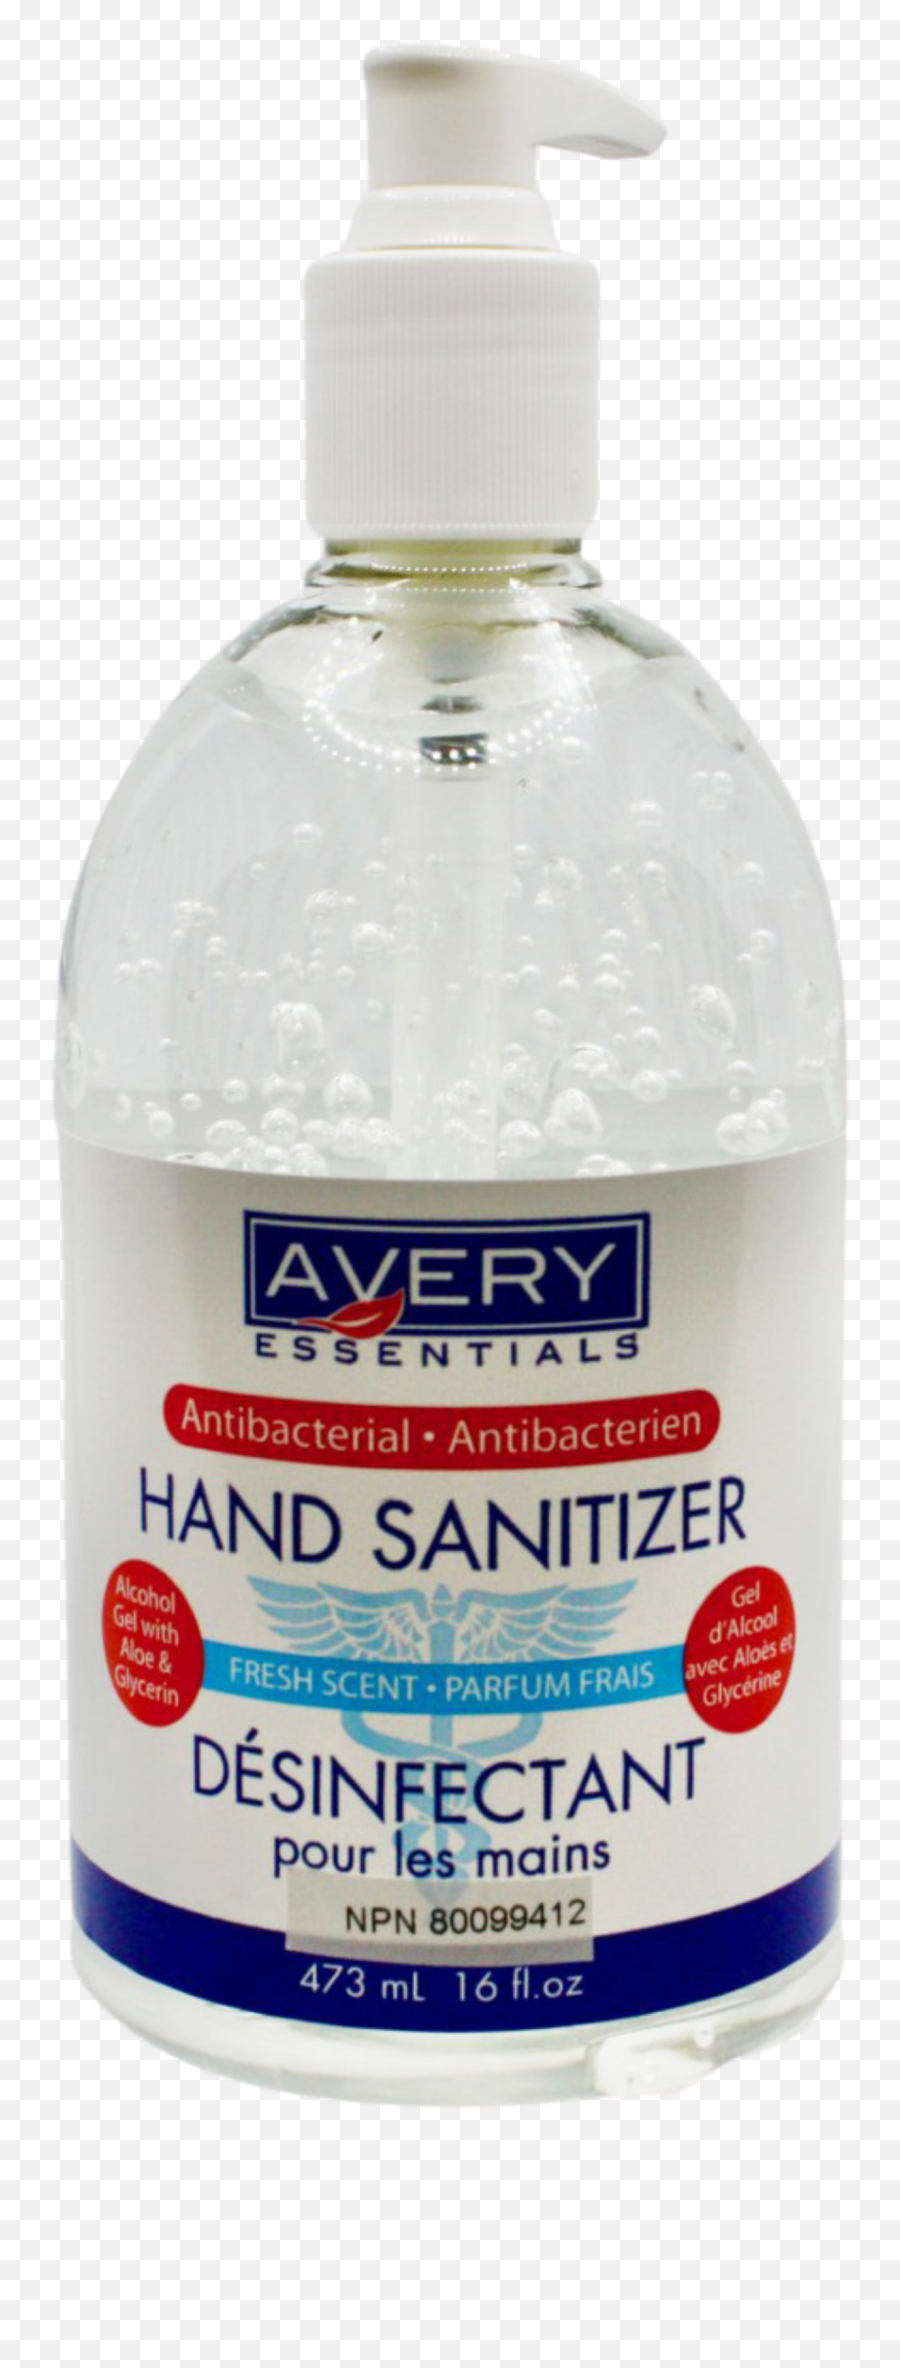 Hand Sanitizer Gel 70 - 16oz U2013 Medicanshop Emoji,Hand Sanitizer Png